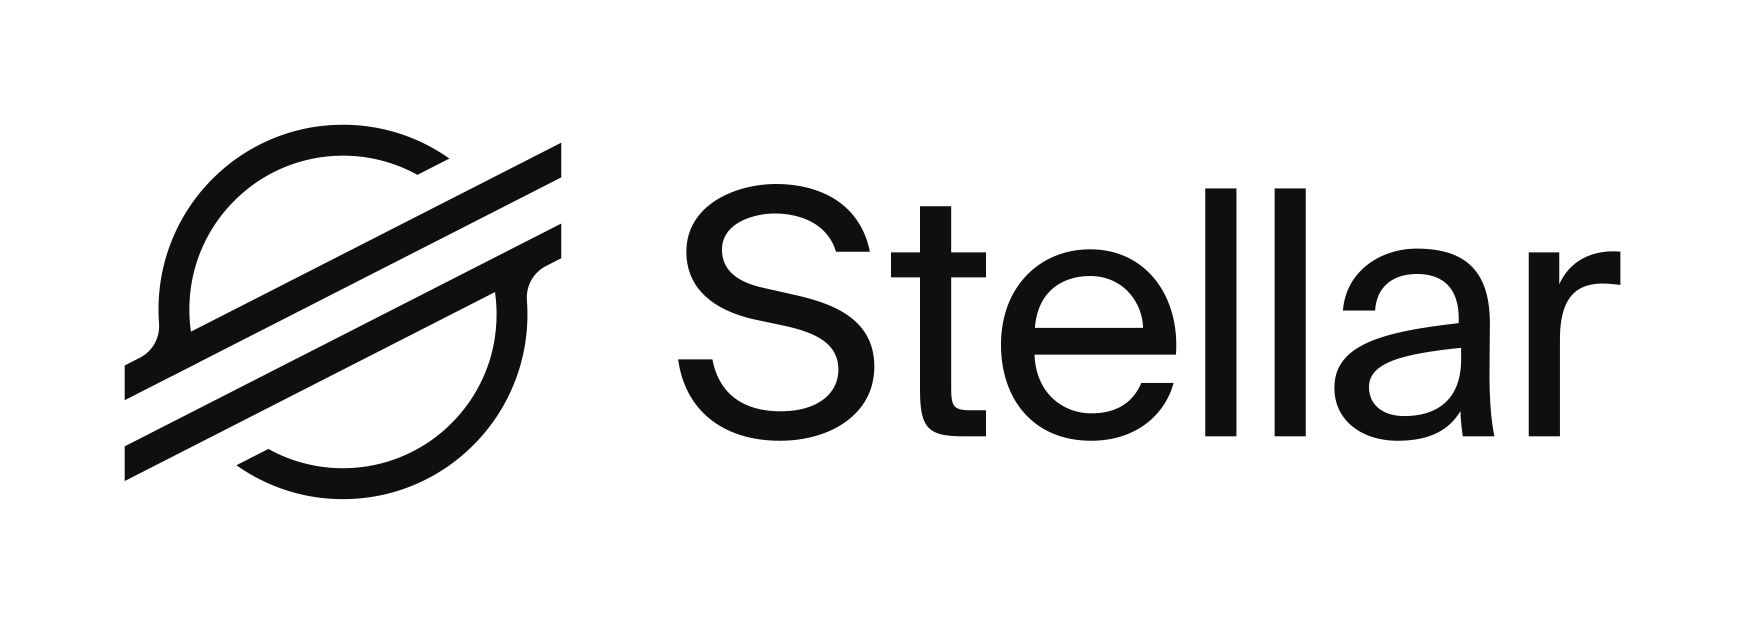 stellar-logo